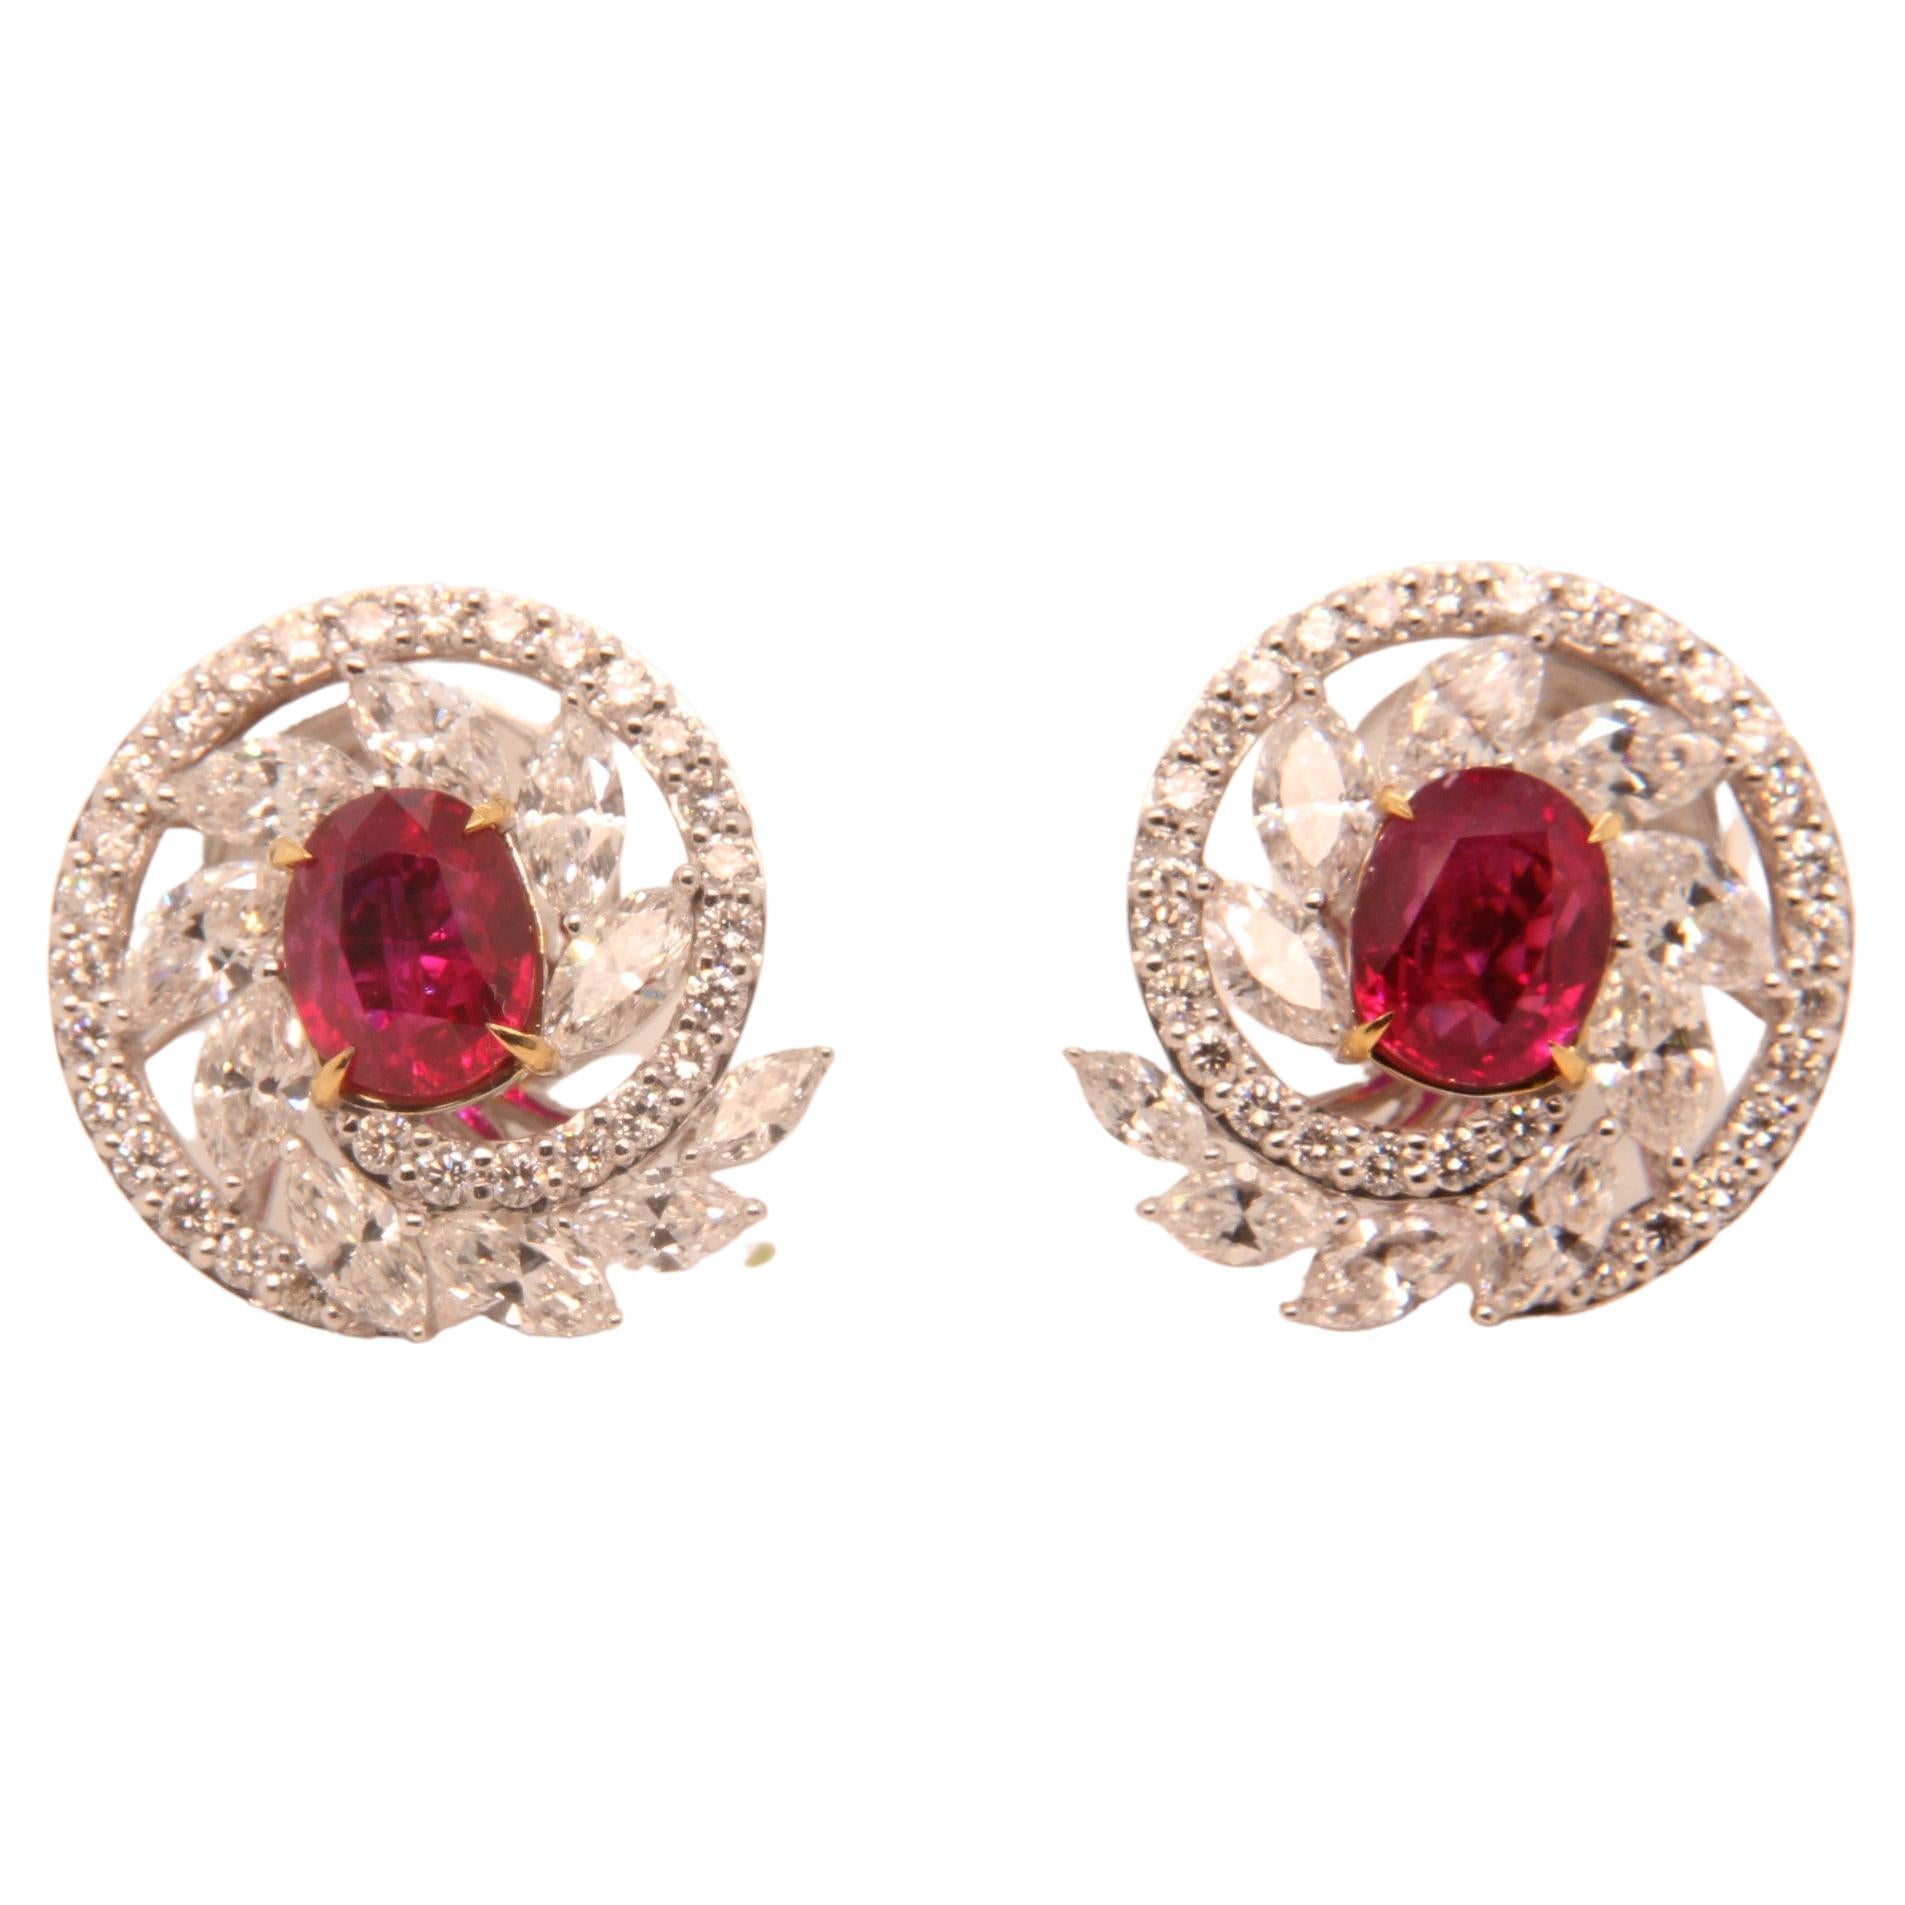 Boucles d'oreilles en or 18 carats avec diamants et rubis de Birmanie couleur sang de pigeon, non chauffé, 2,48 carats GRS